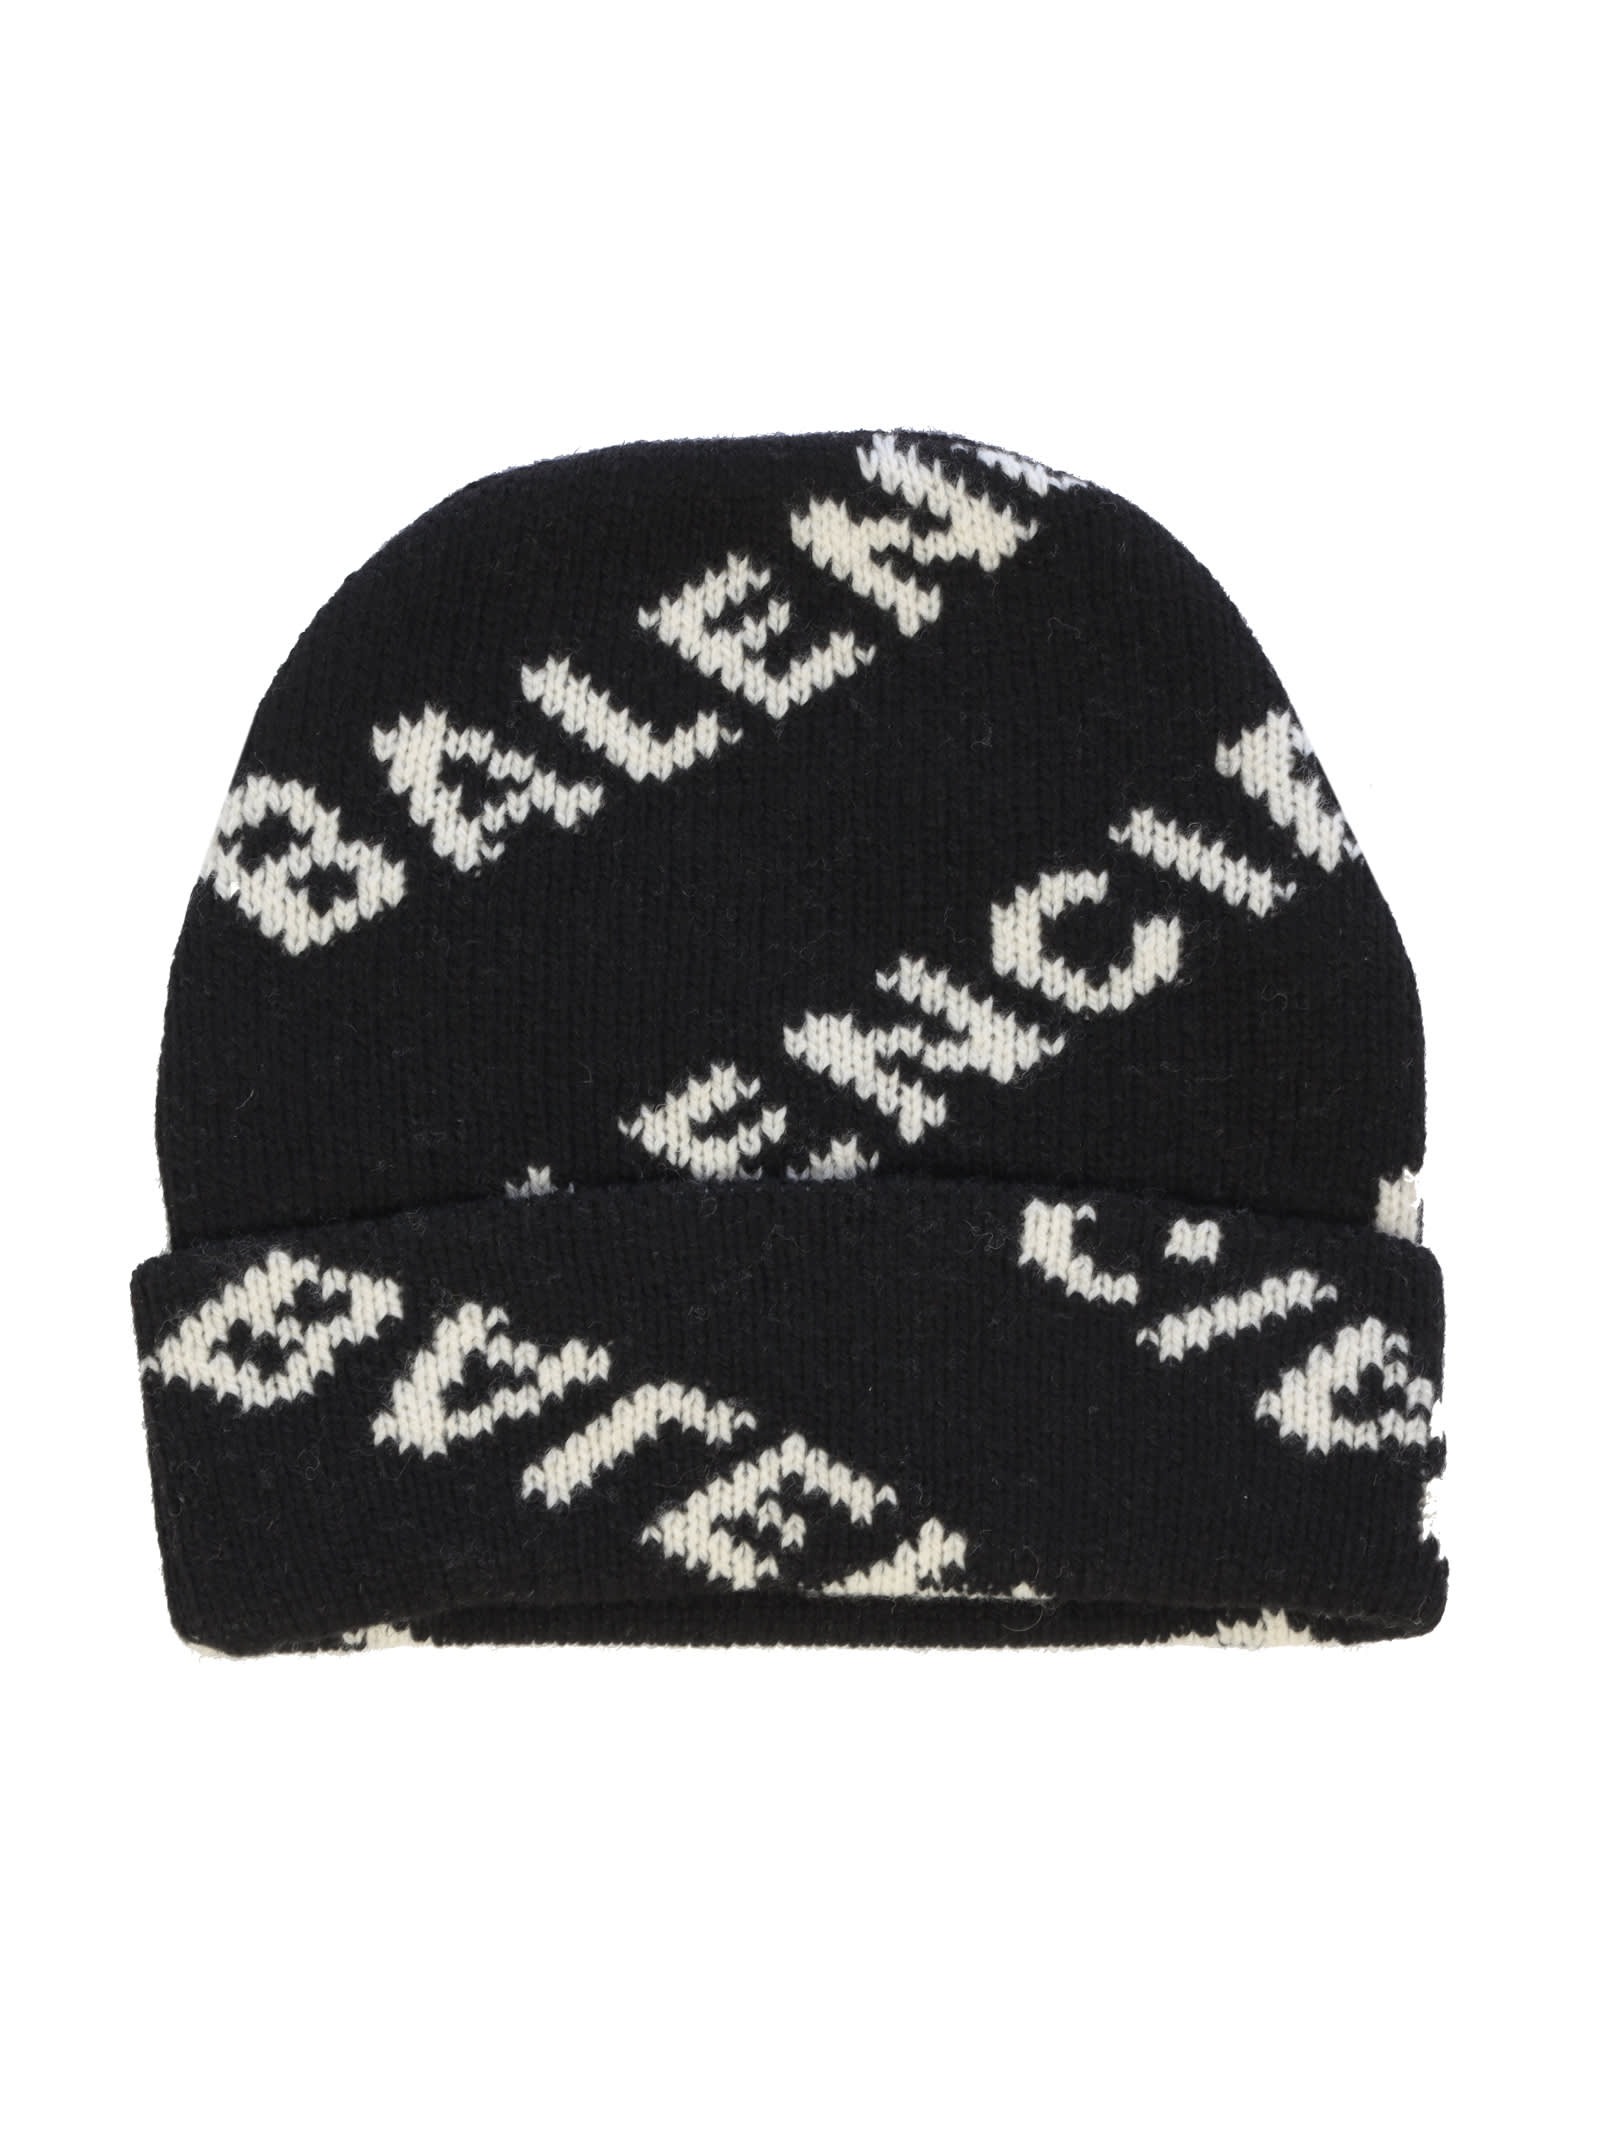 Balenciaga Balenciaga Beanie Wool Knit Hat - Black White - 11006973 ...